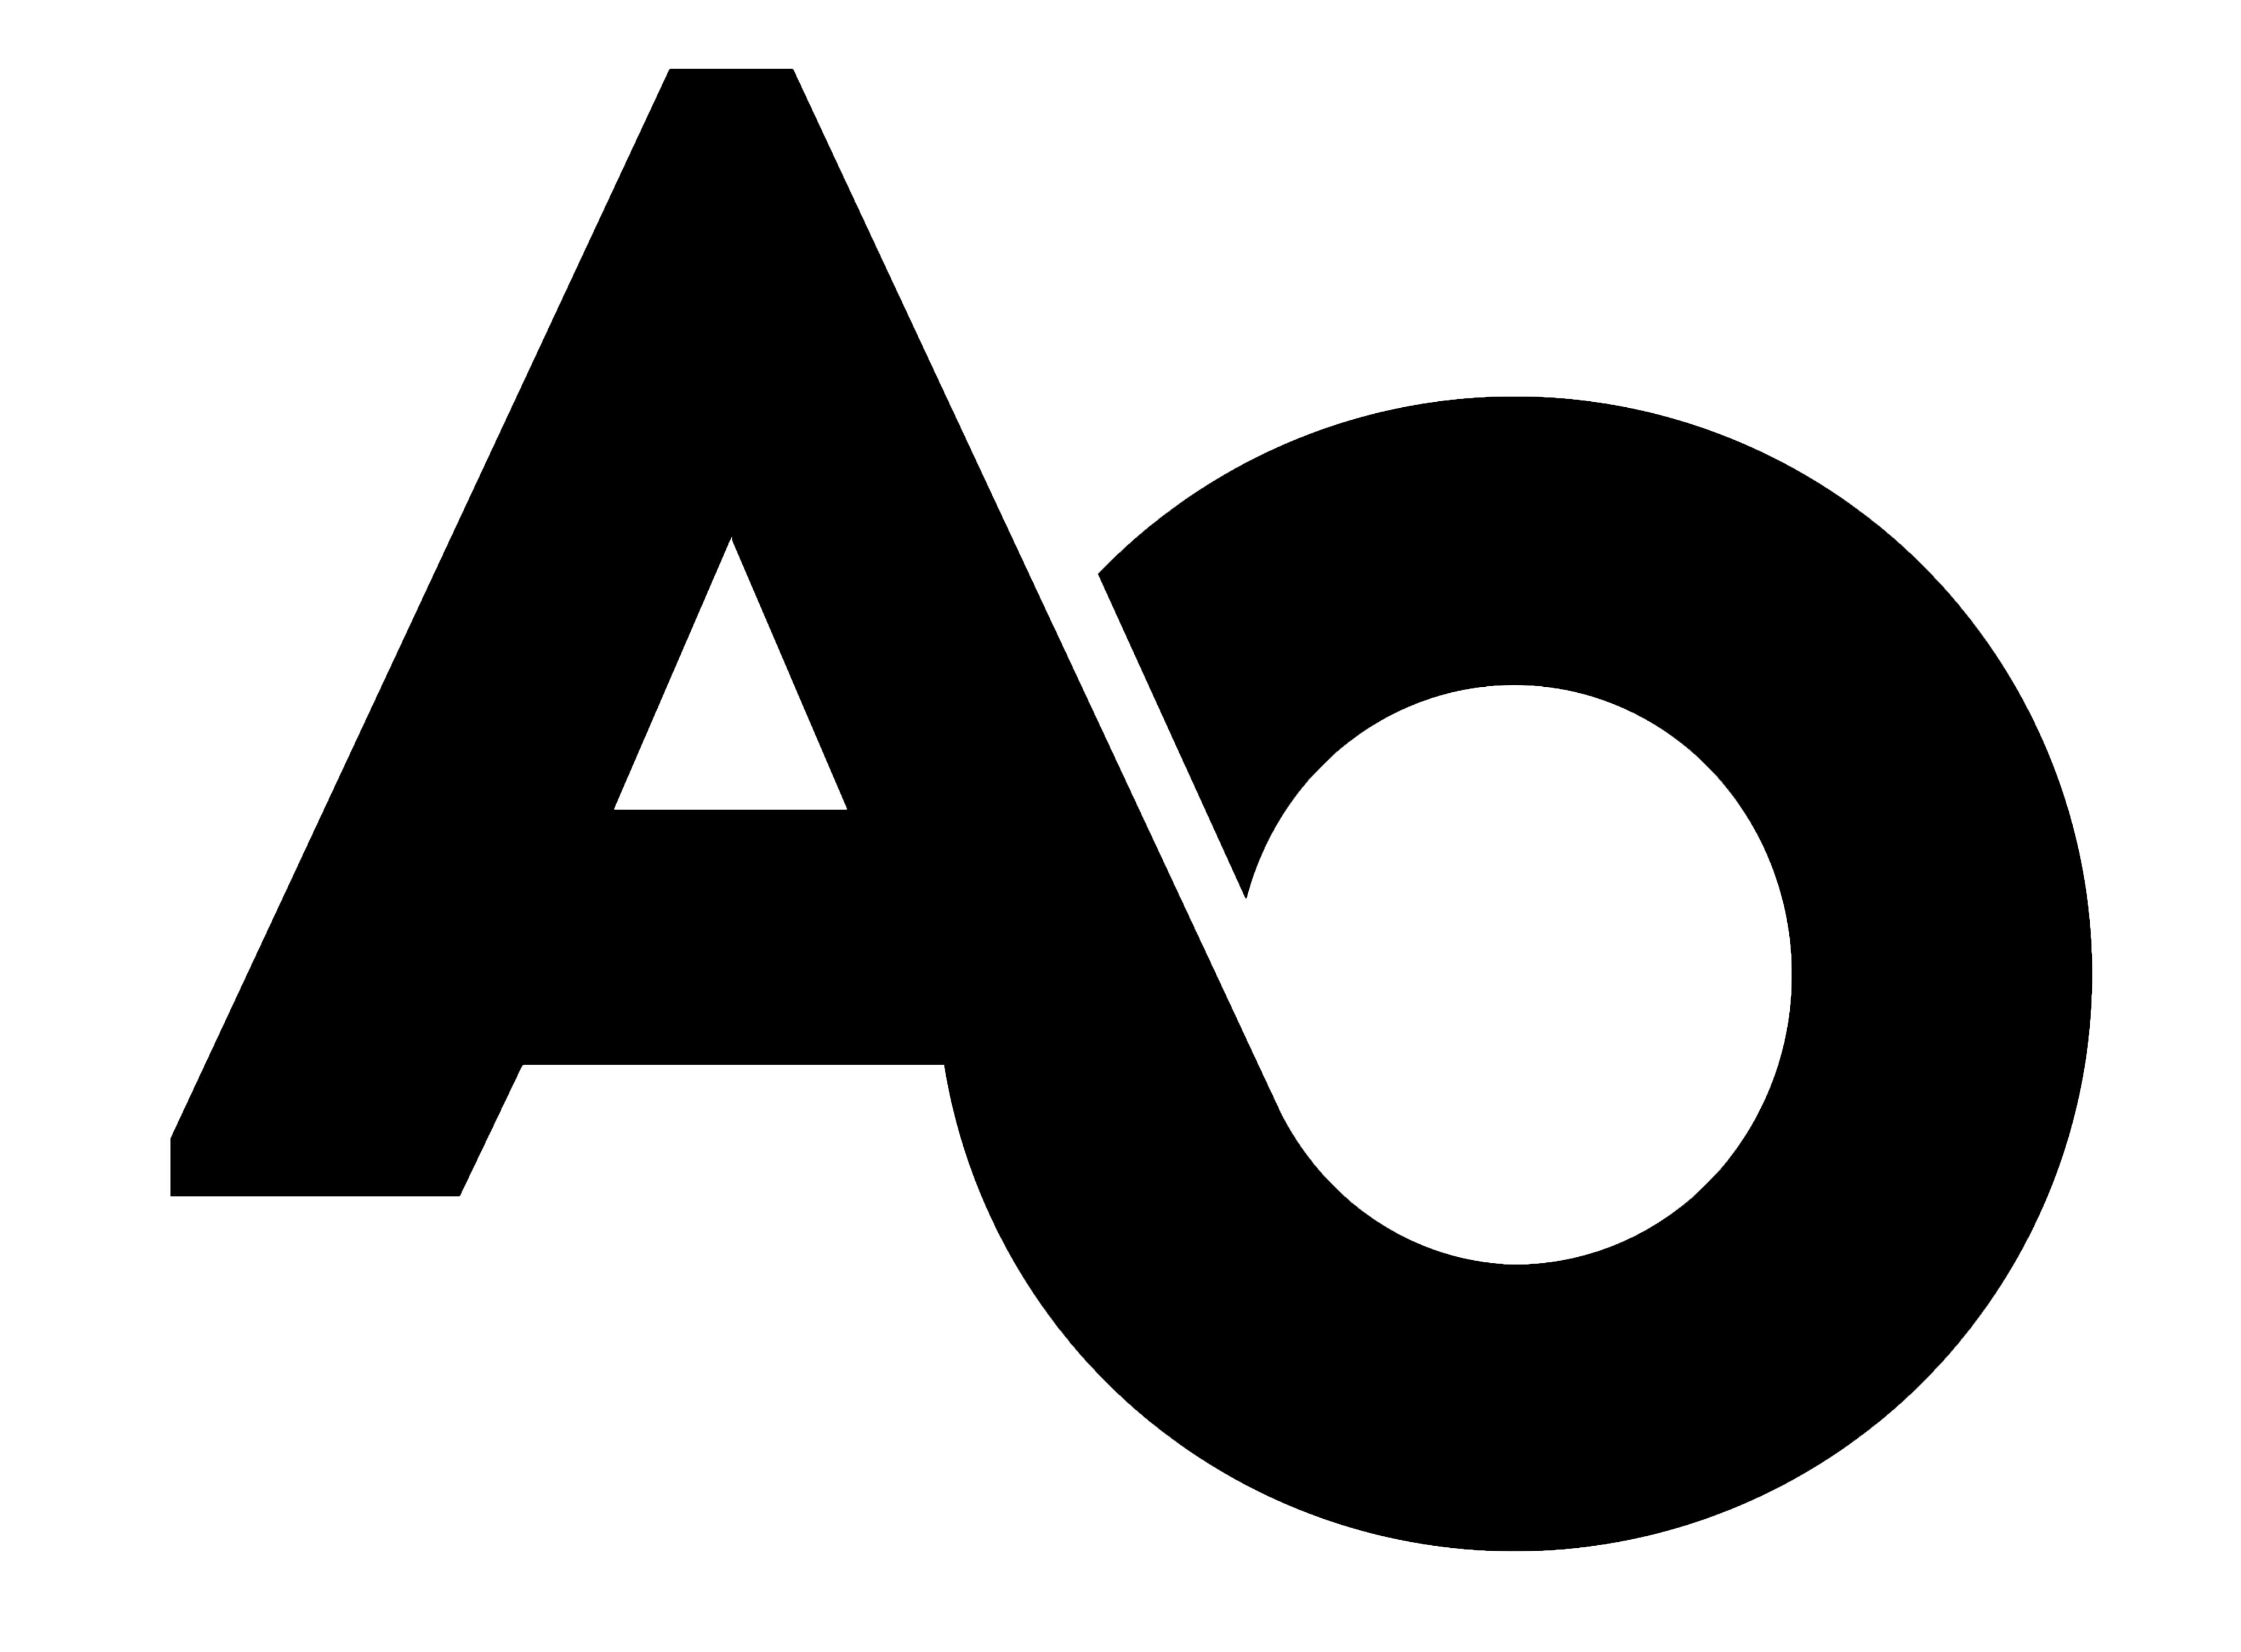 Trademark Logo AO